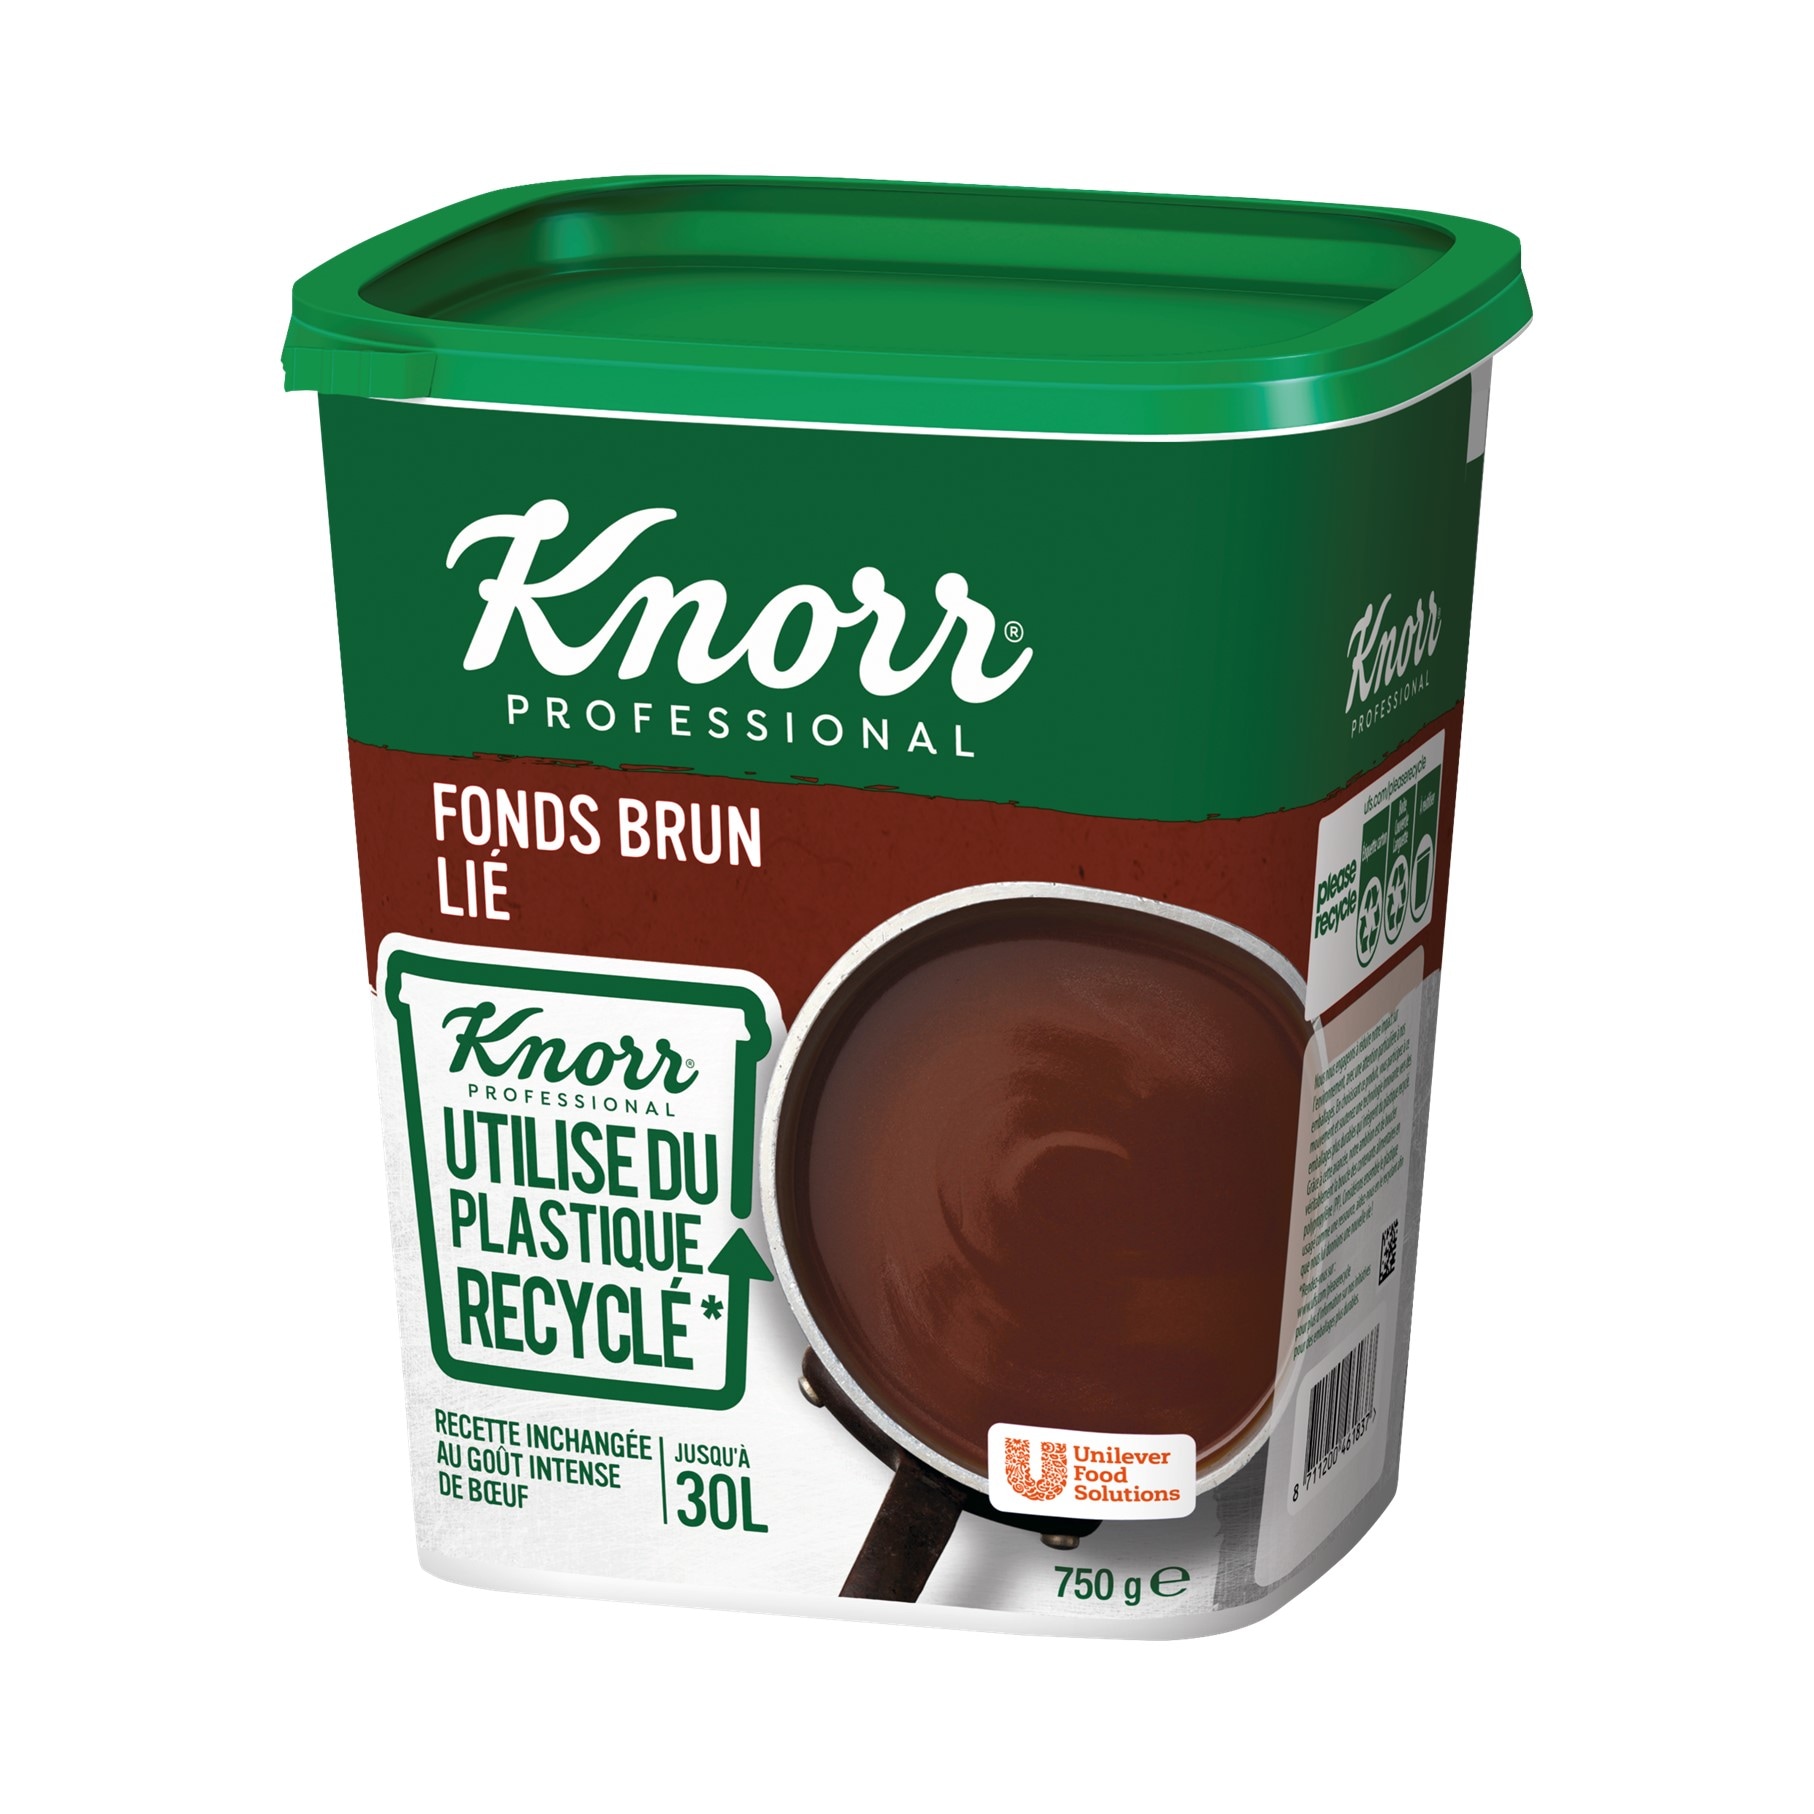 Knorr Fonds Brun Lié Déshydraté Boîte 750g  jusqu'à 30L - Le Fonds Brun Lié Knorr apporte une saveur intense de boeuf à votre plat.